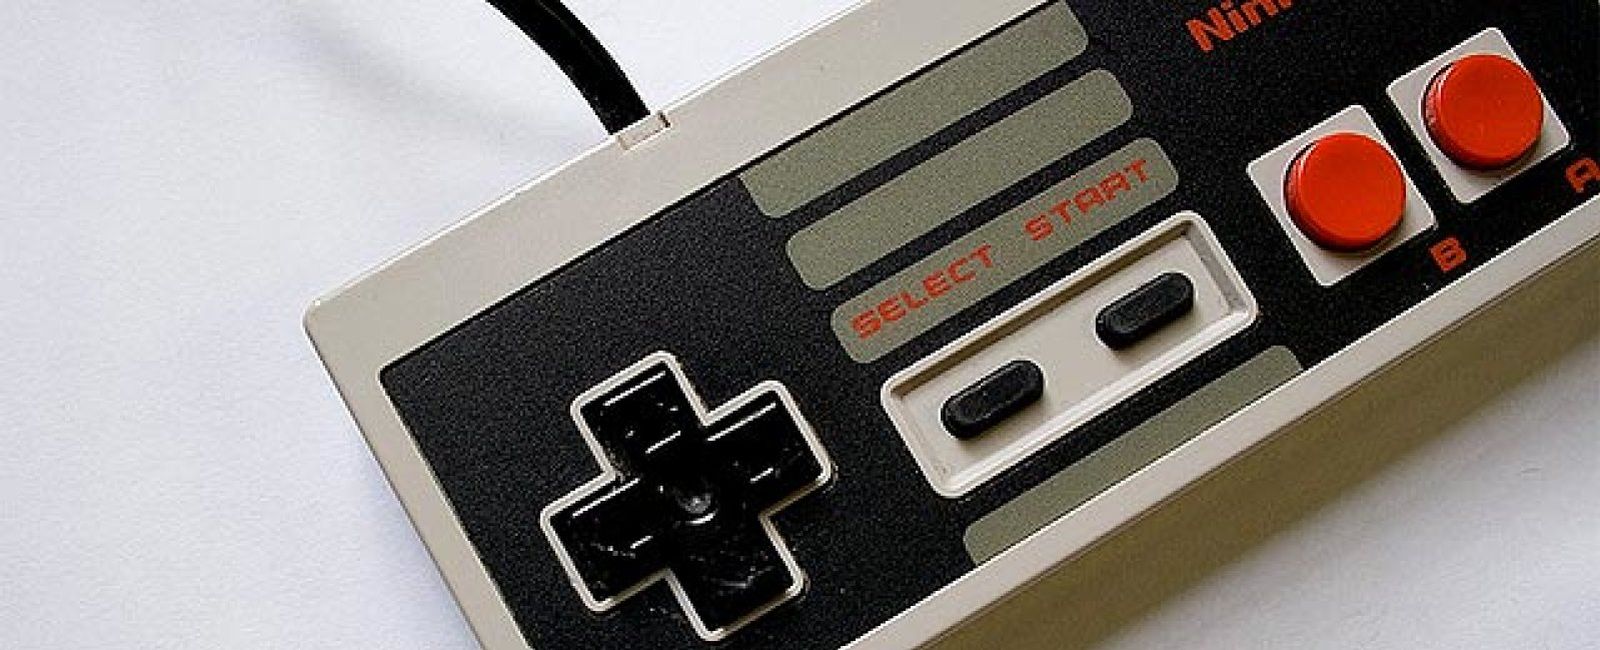 Foto: NES, la primera gran consola de juegos, cumple hoy 30 años